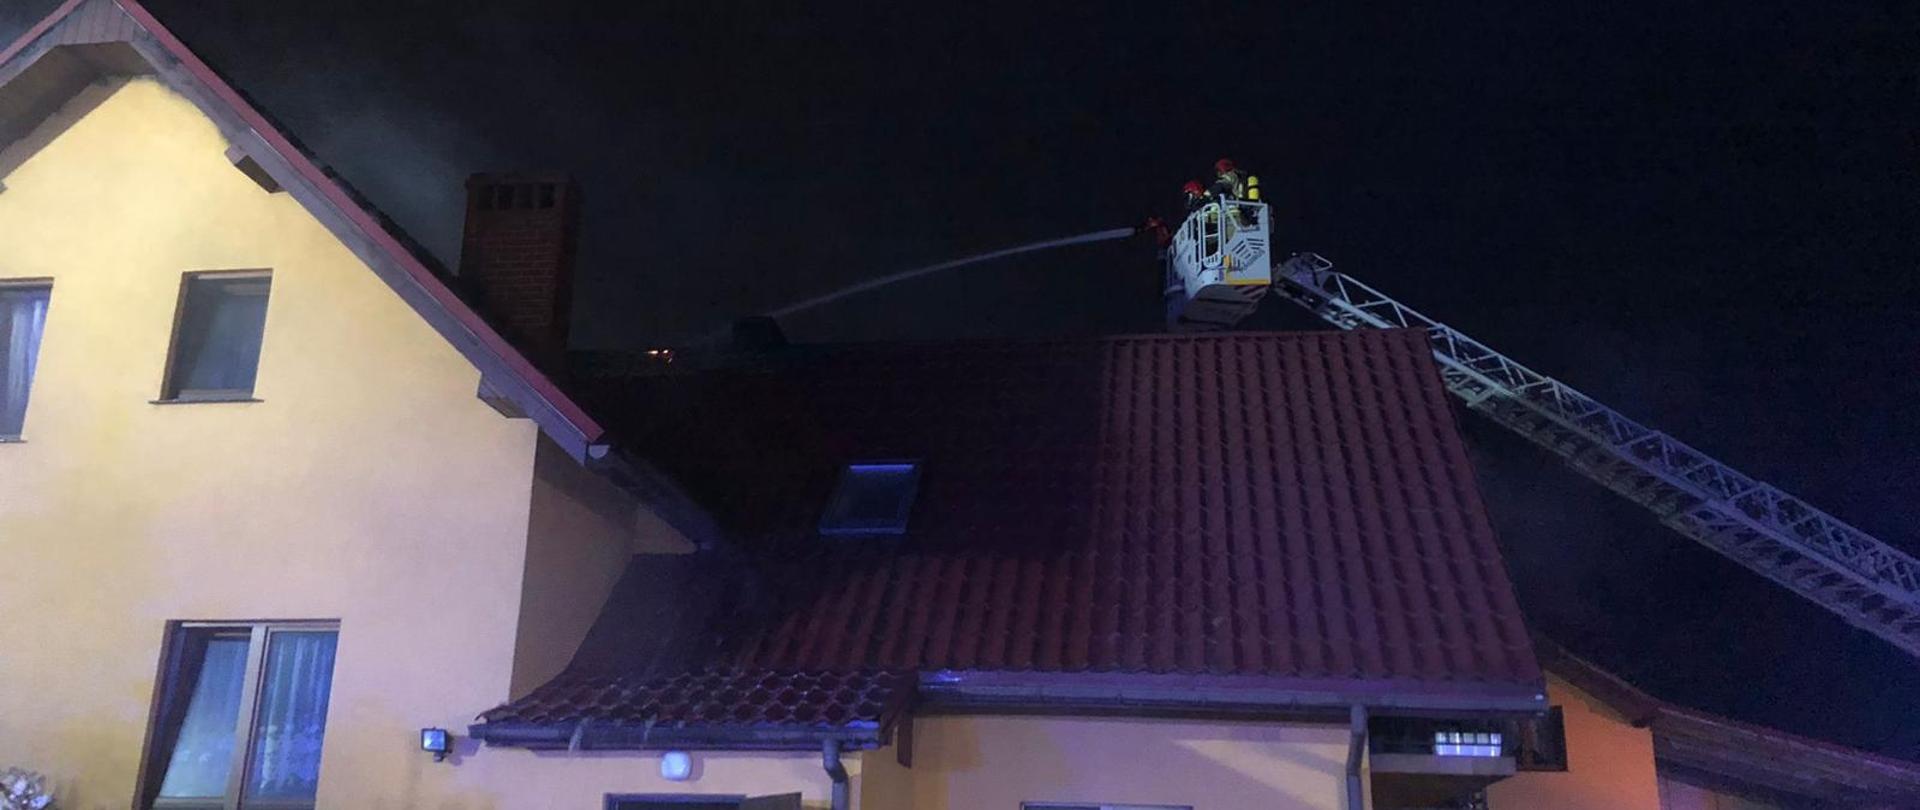 Pożar domu jednorodzinnego we Wrocławiu przy ul. Łyżwiarzy